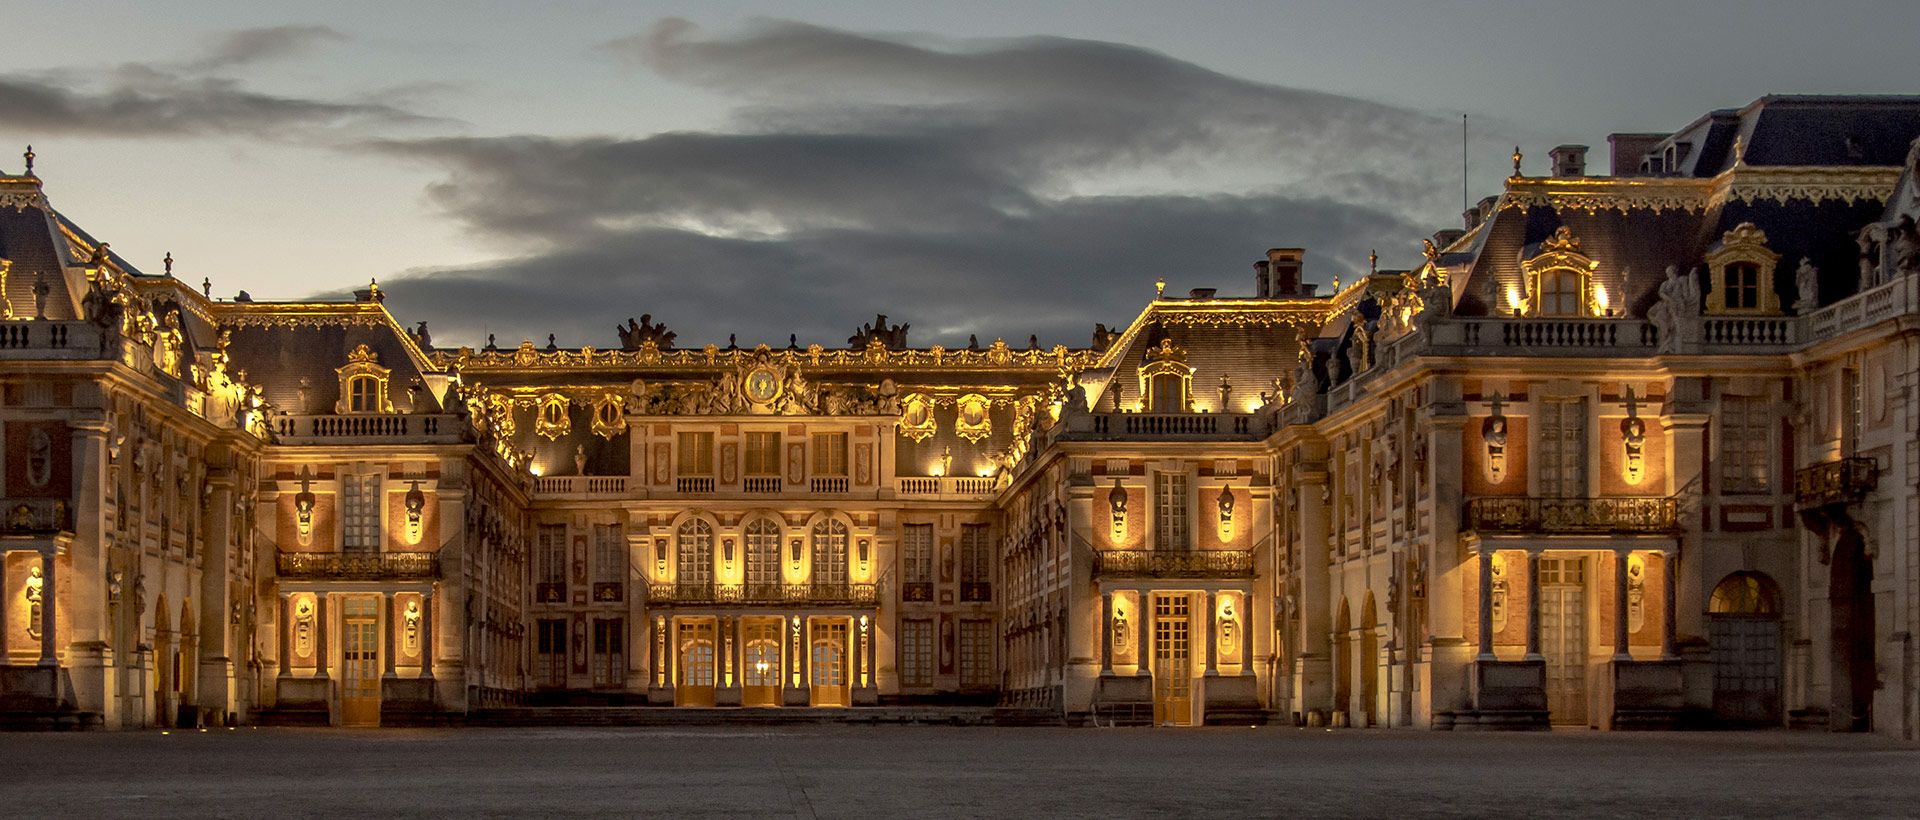 Camping Grandes Aguas Musicales del palacio de Versalles